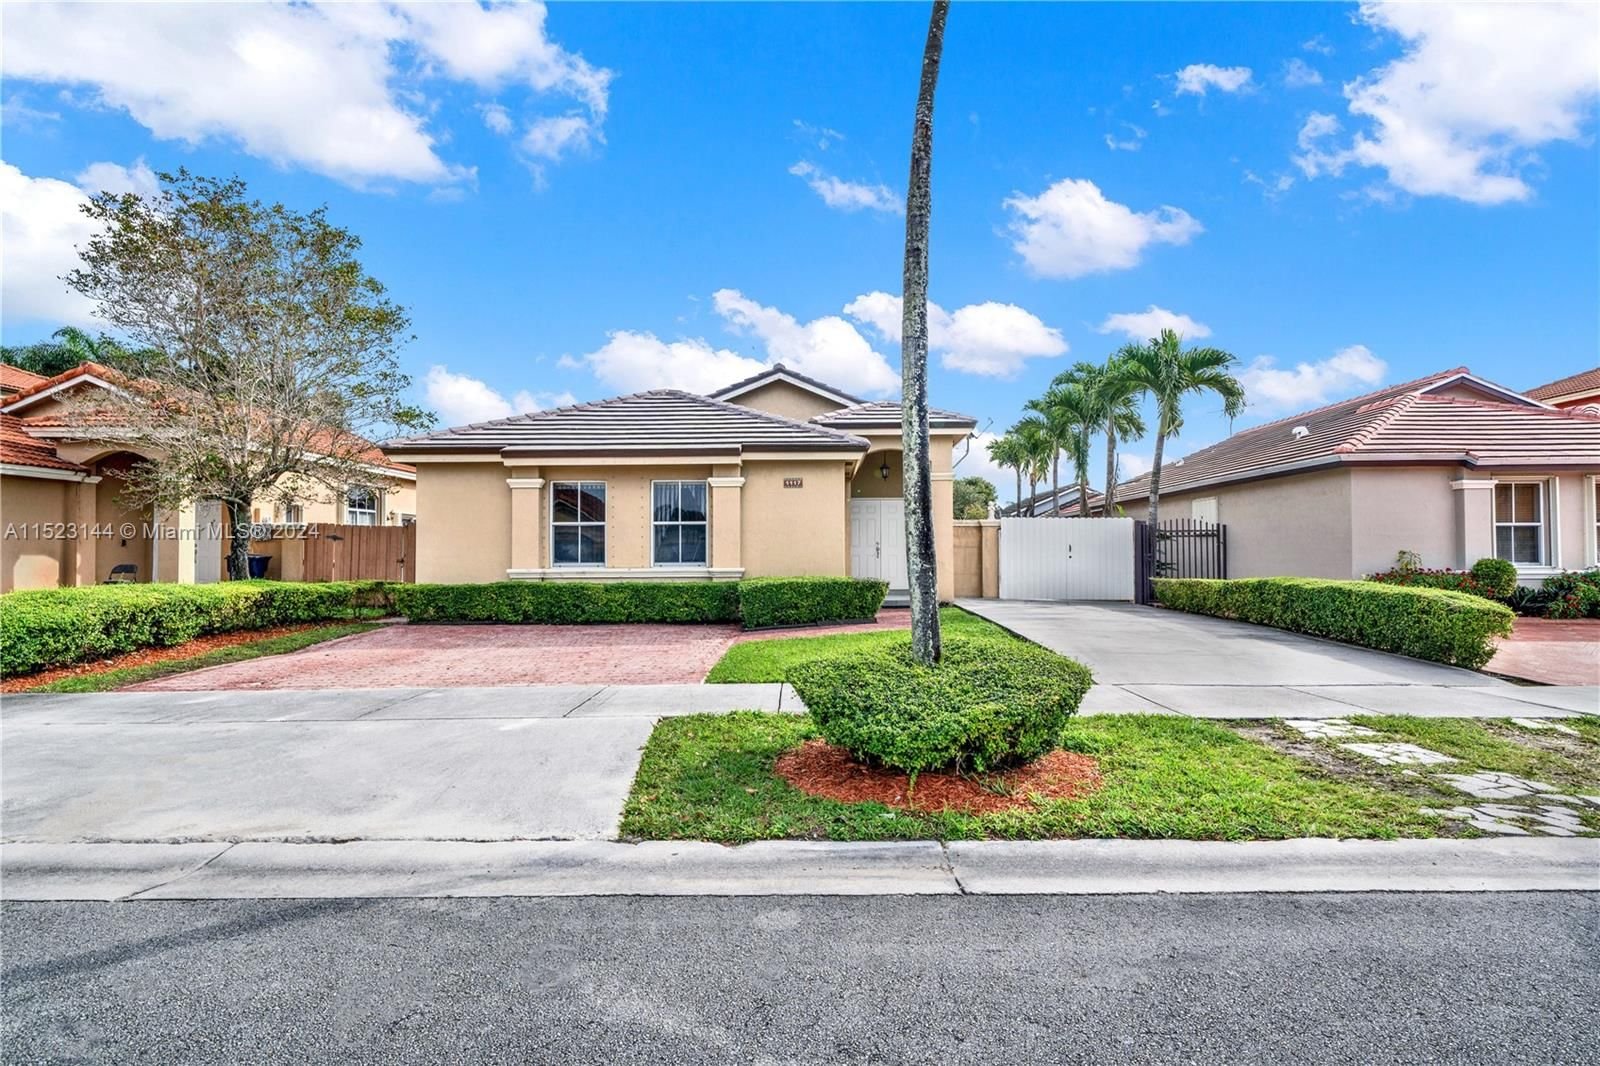 Real estate property located at 1117 136th Ct, Miami-Dade County, RIVIERA TRACE 1ST ADDN, Miami, FL